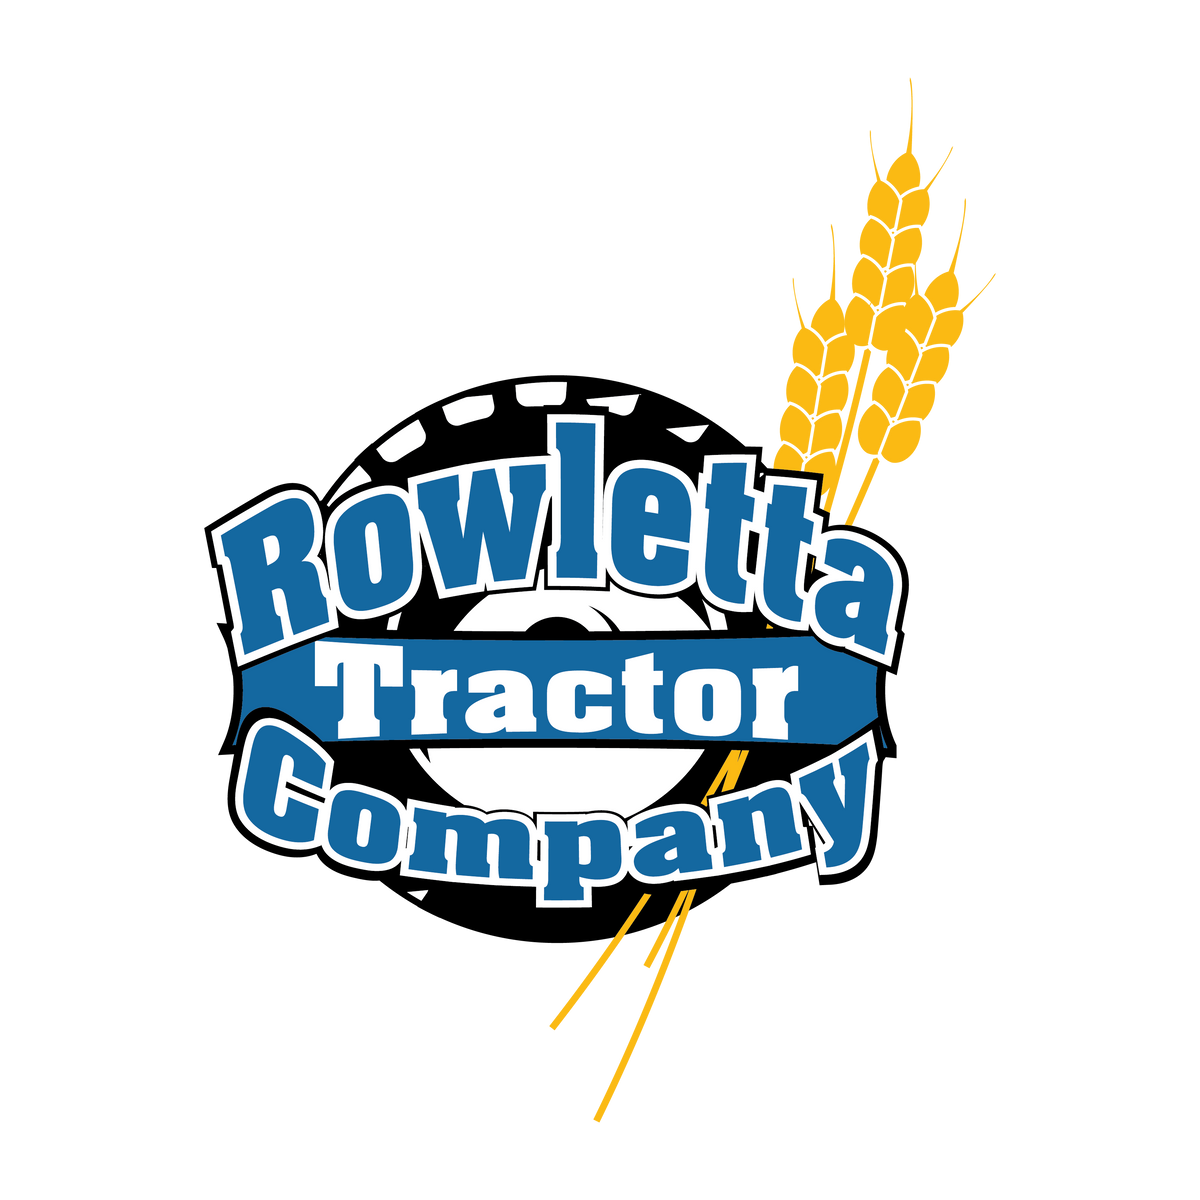 Rowletta Tractor Company